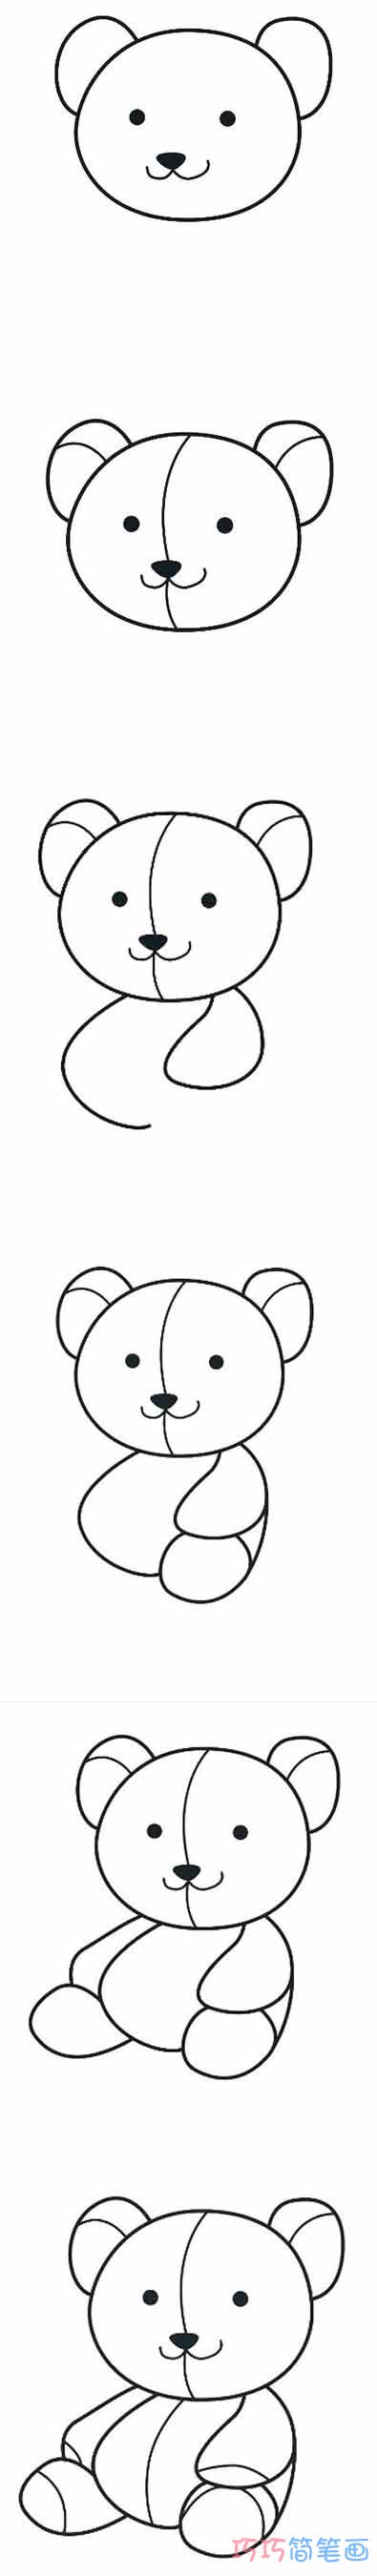 泰迪小熊怎么画可爱 带步骤图小熊简笔画图片